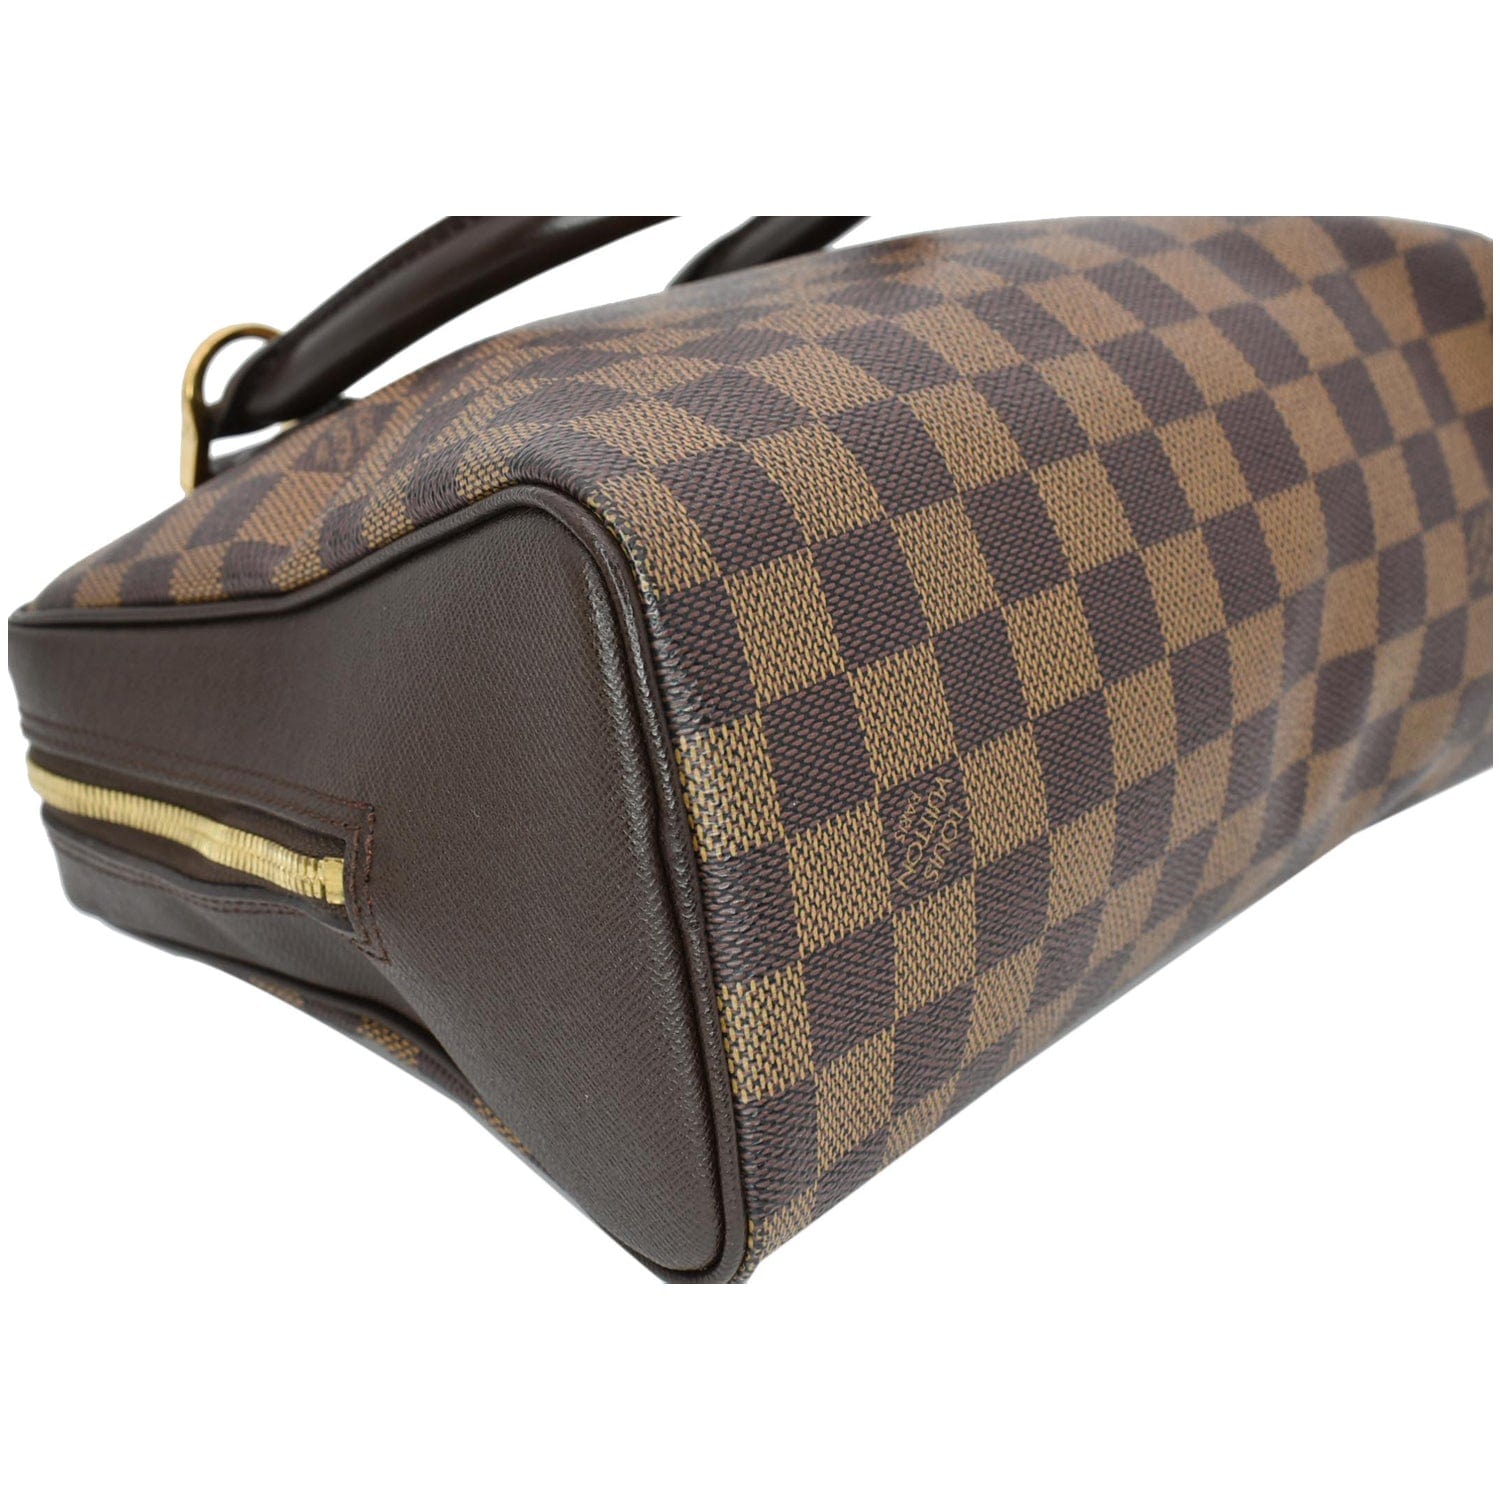 Louis Vuitton Damier Ebene Brera Brown Handbag MSWRZDU 144030002901